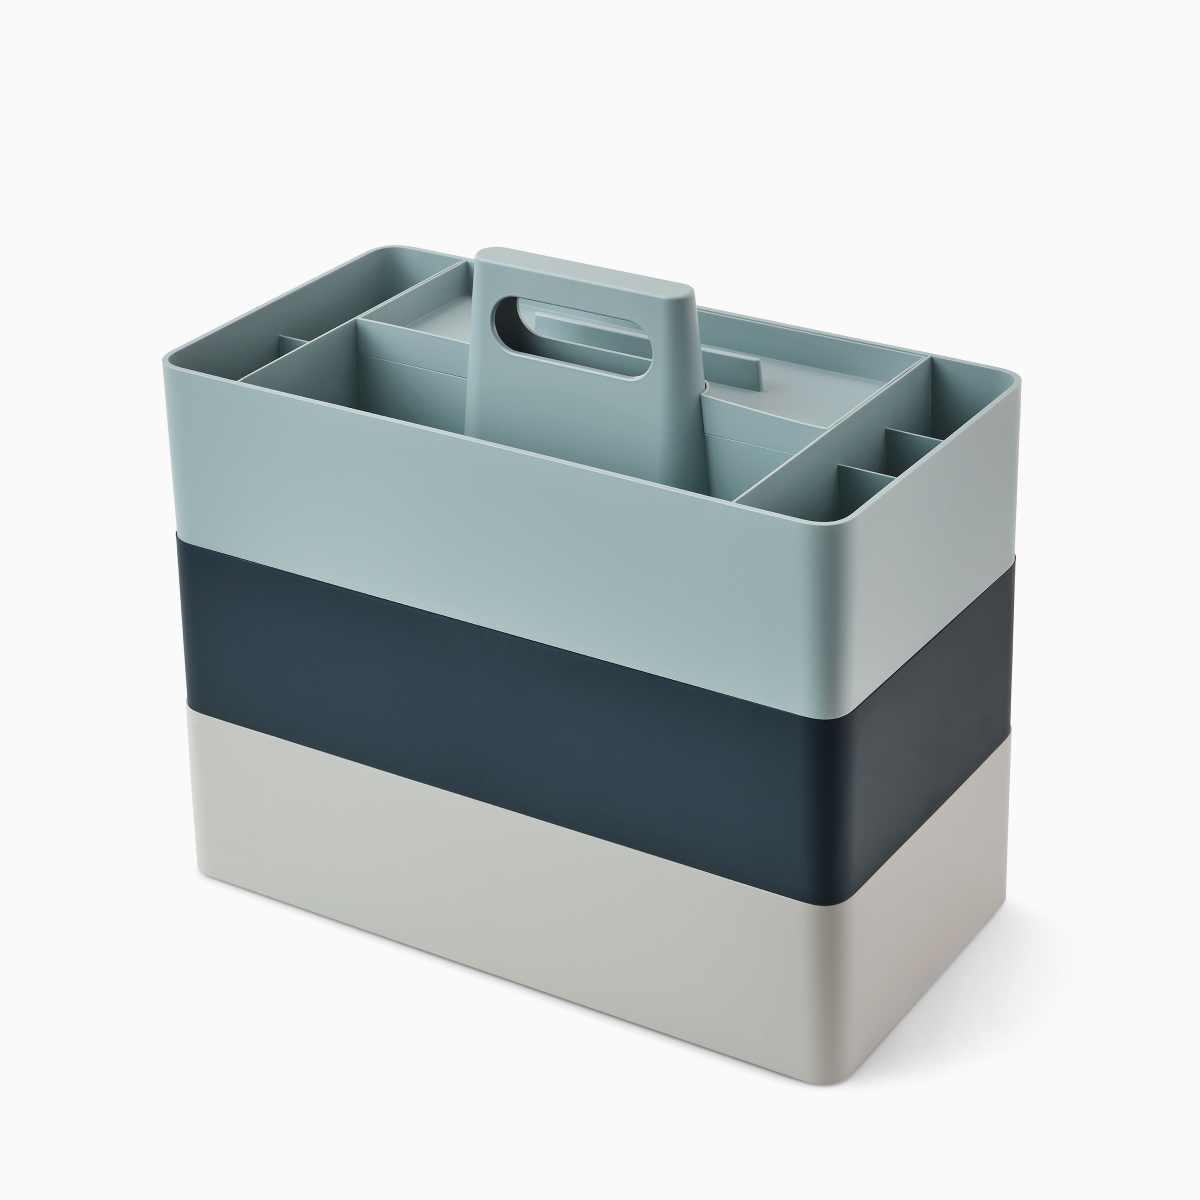 灰色、深蓝色和浅蓝色 OE1 工具箱储物箱，叠放在一起，角度视图。